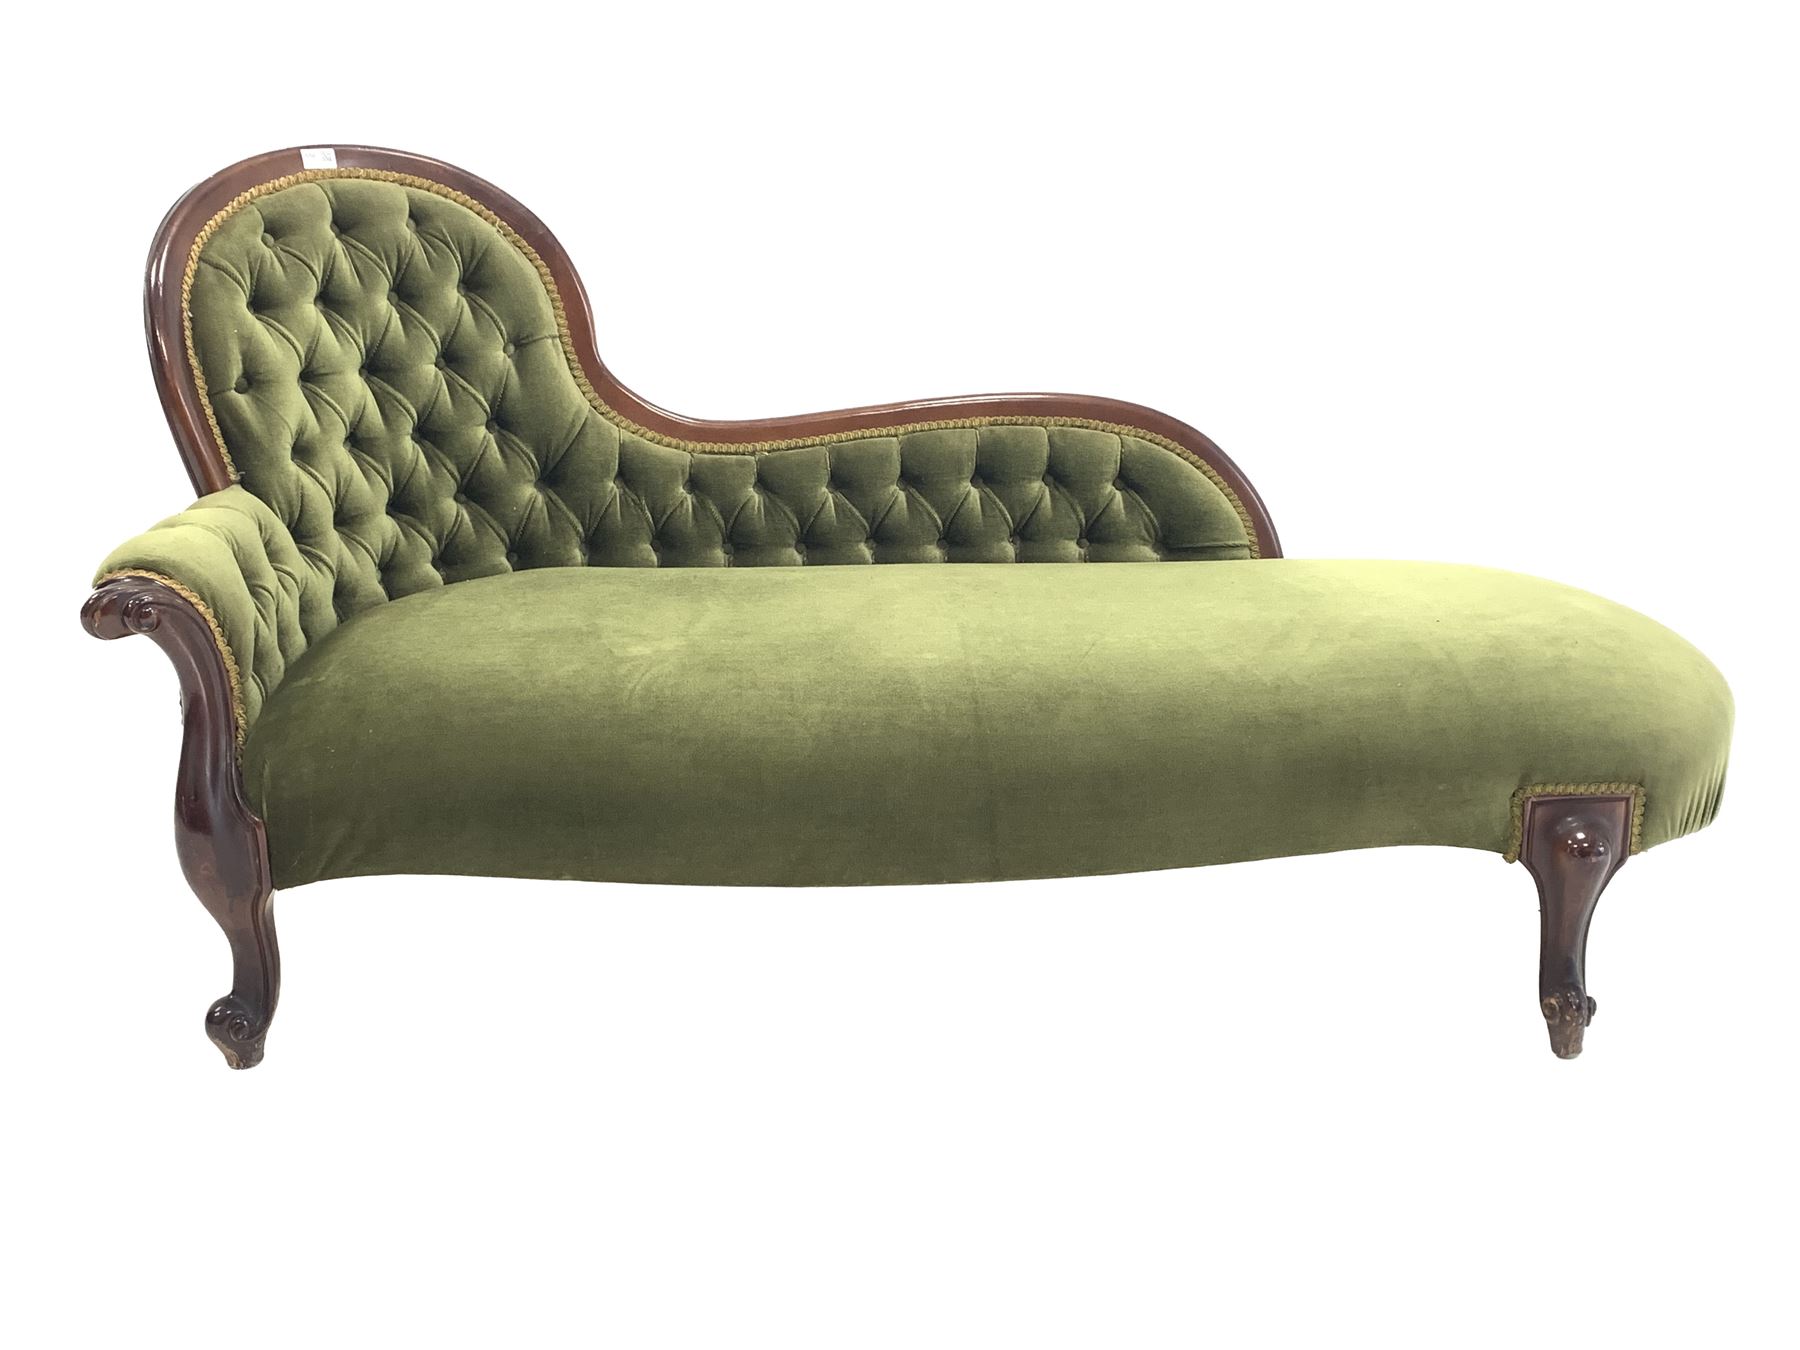 Victorian style mahogany chaise longue